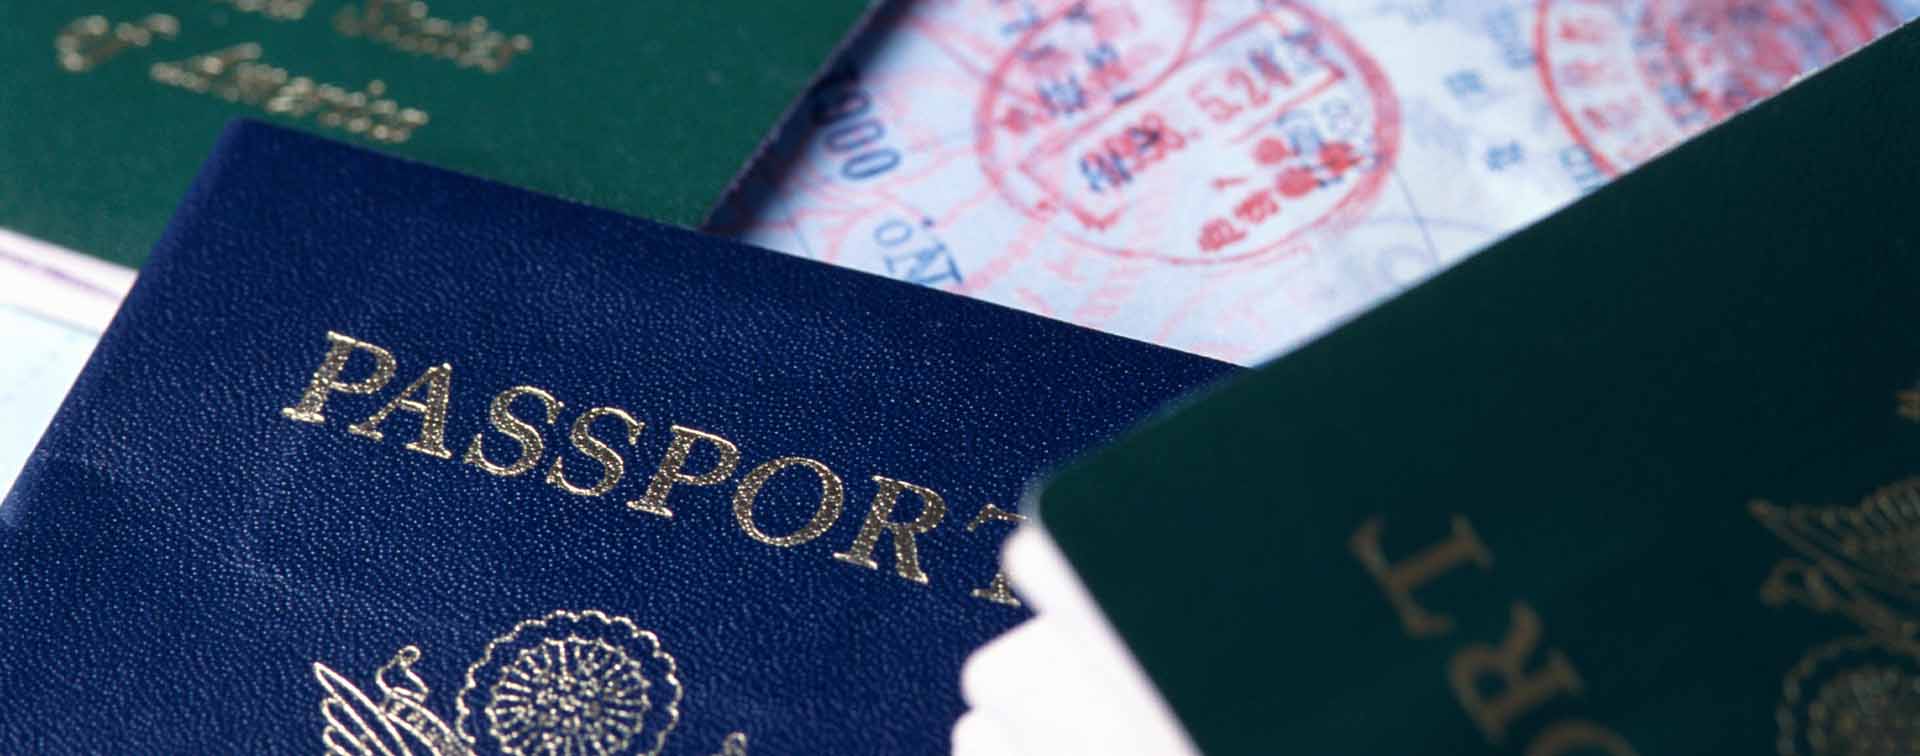 Close-up of various passports